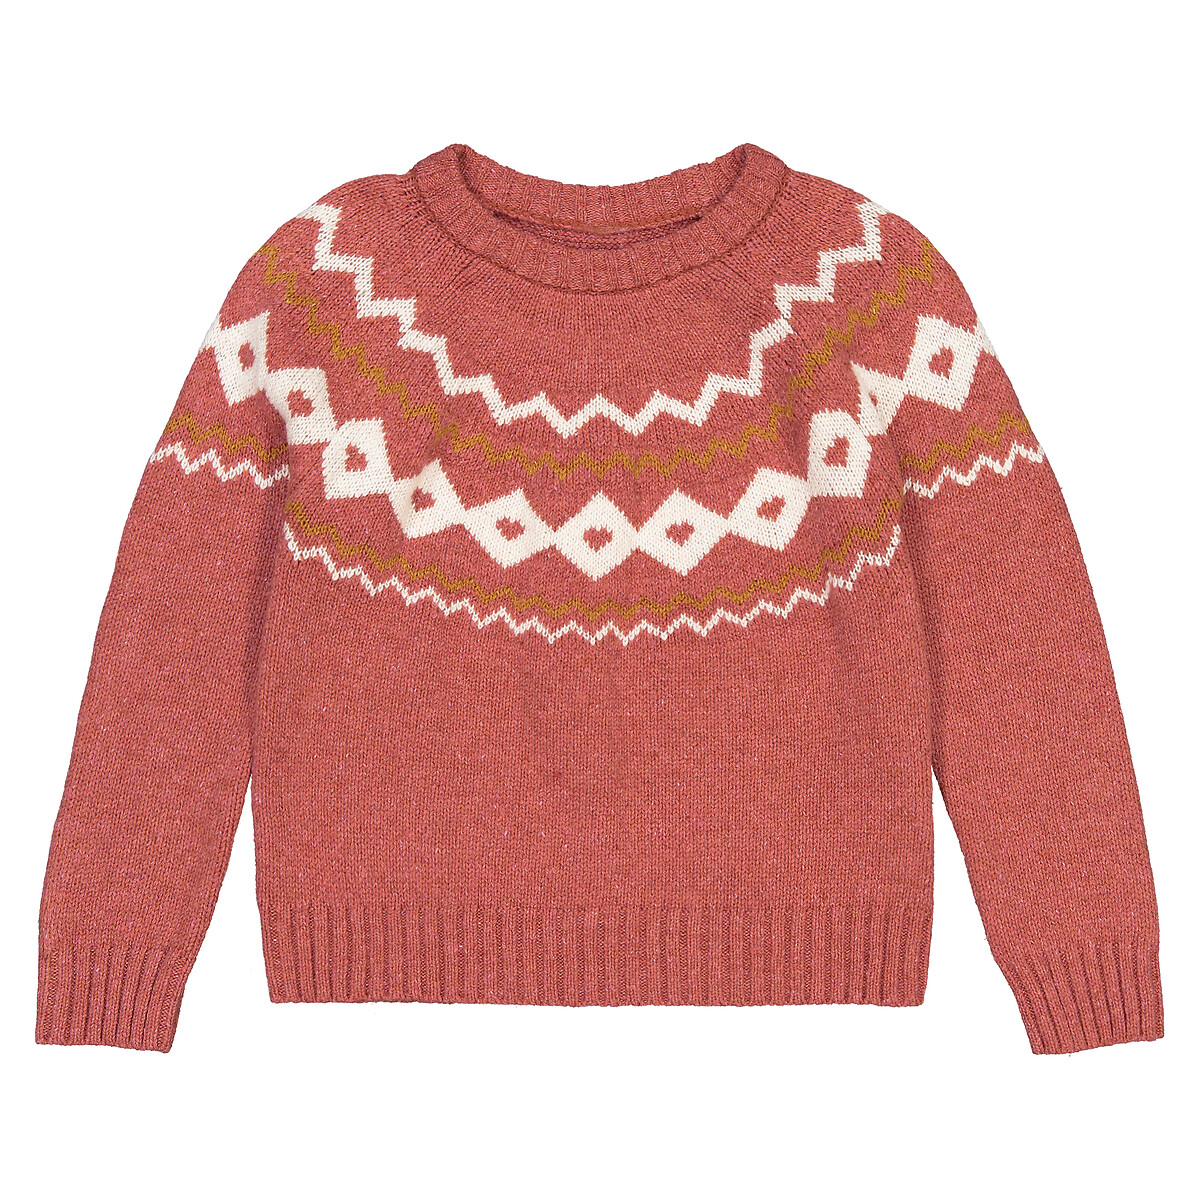 Пуловер LaRedoute С круглым вырезом из тонкого трикотажа жаккард 3-12 лет 4 года - 102 см розовый, размер 4 года - 102 см - фото 3